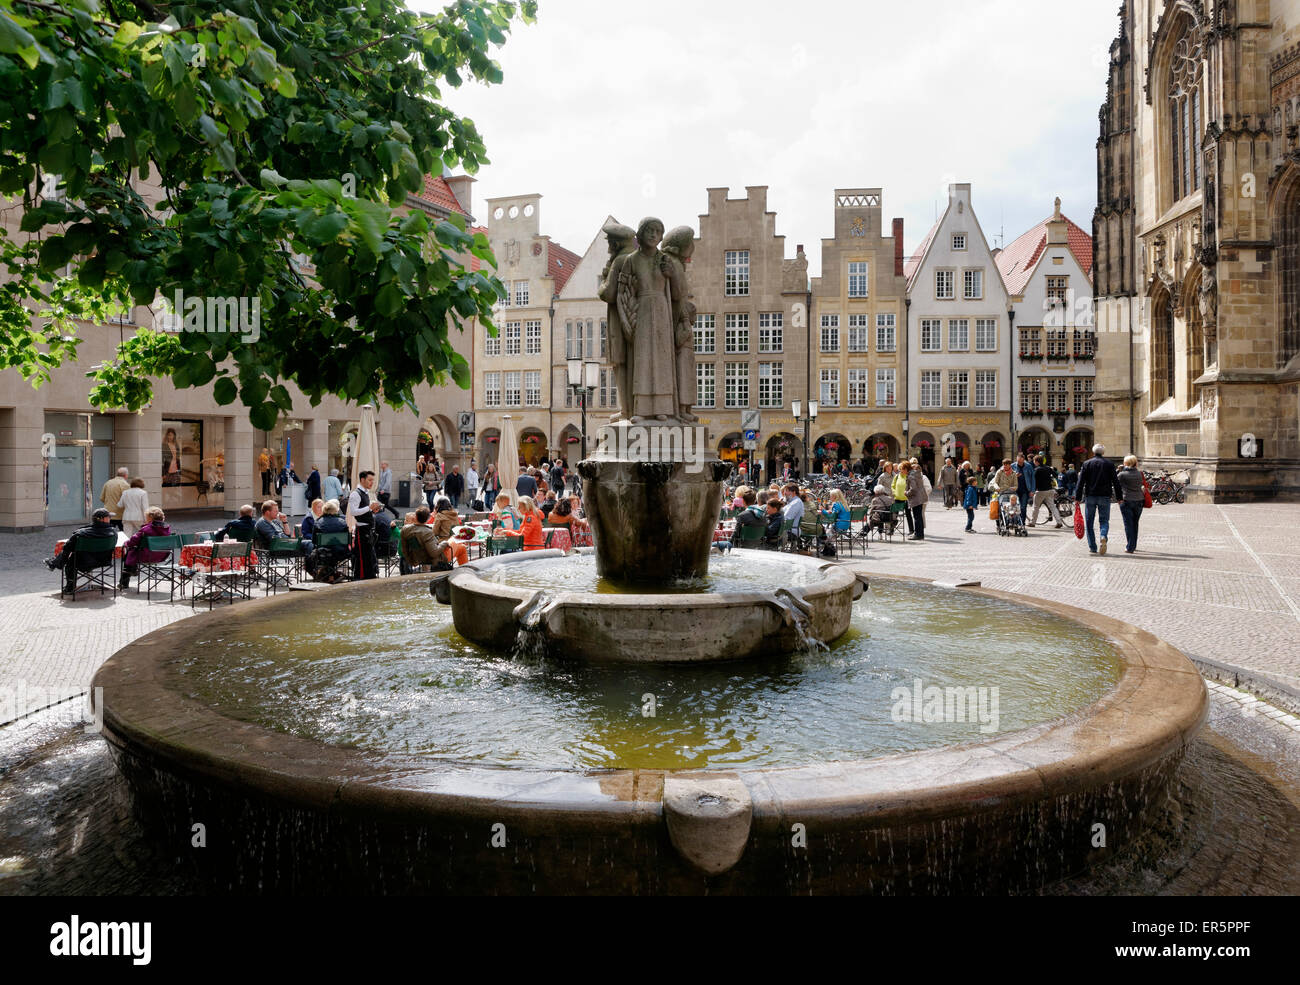 Town square with fountain, Lambertikirchplatz, Muenster, North Rhine-Westphalia, Germany Stock Photo